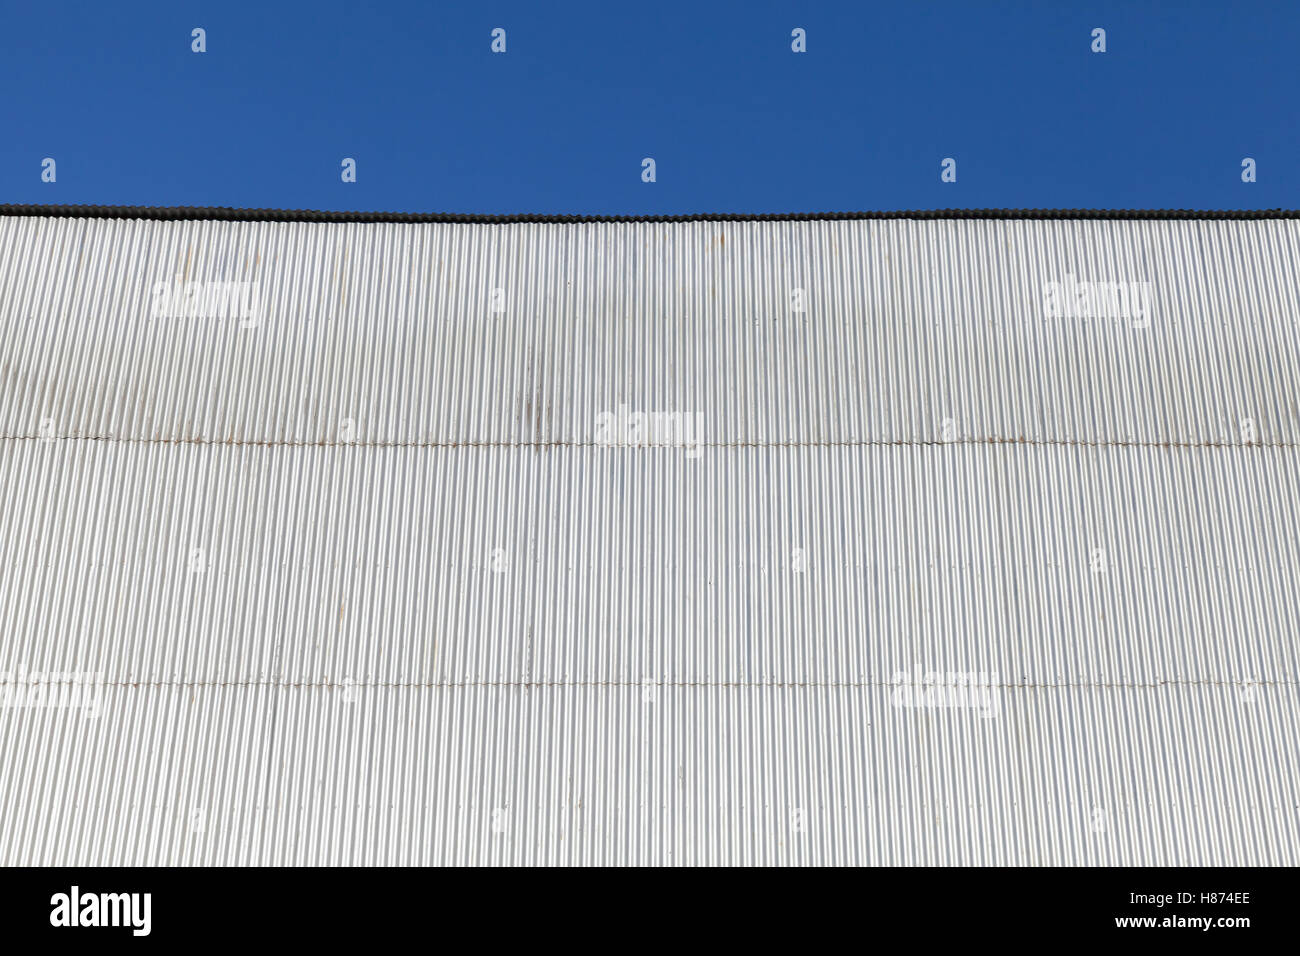 Bâtiment industriel mur fait de feuille de métal ondulé, under blue sky Banque D'Images